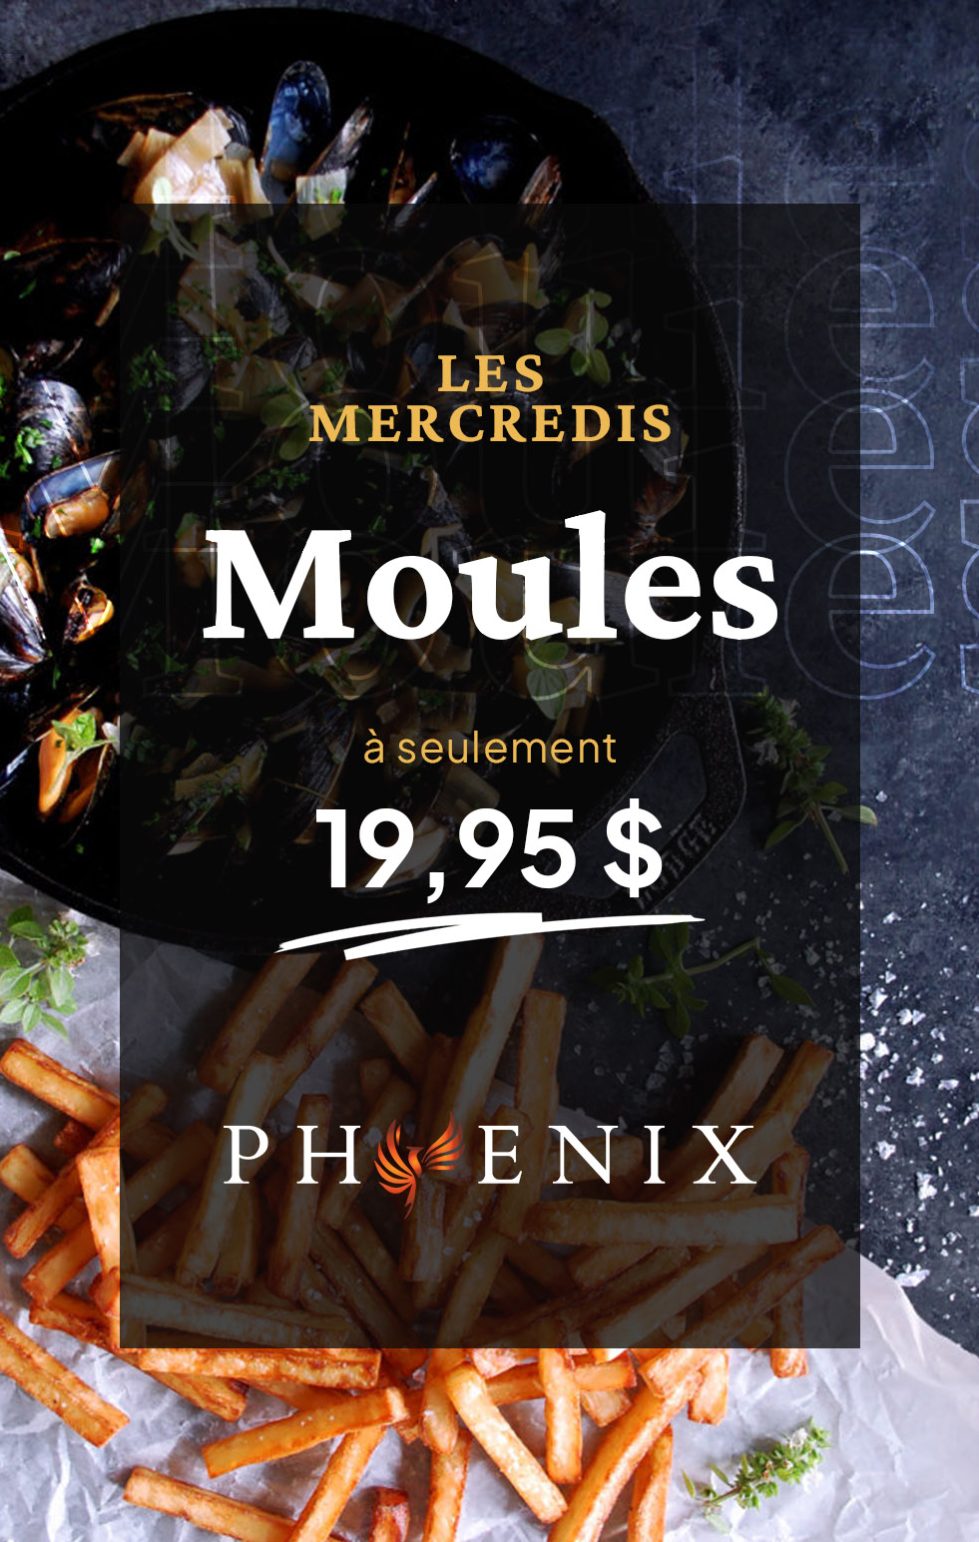 Promos-Moules-PhoenixParvis-Quebec